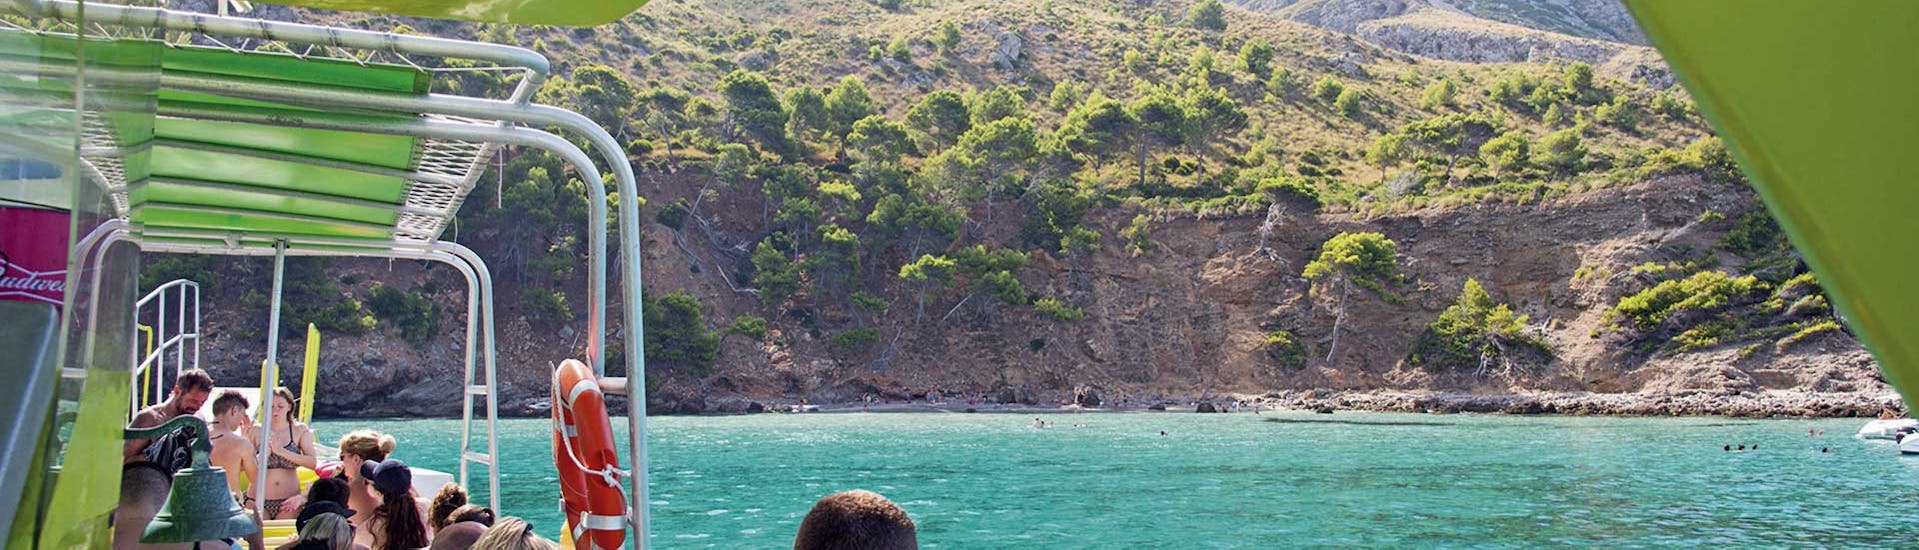 Gita in barca da Alcúdia a Llevant Natural Park  con bagno in mare.